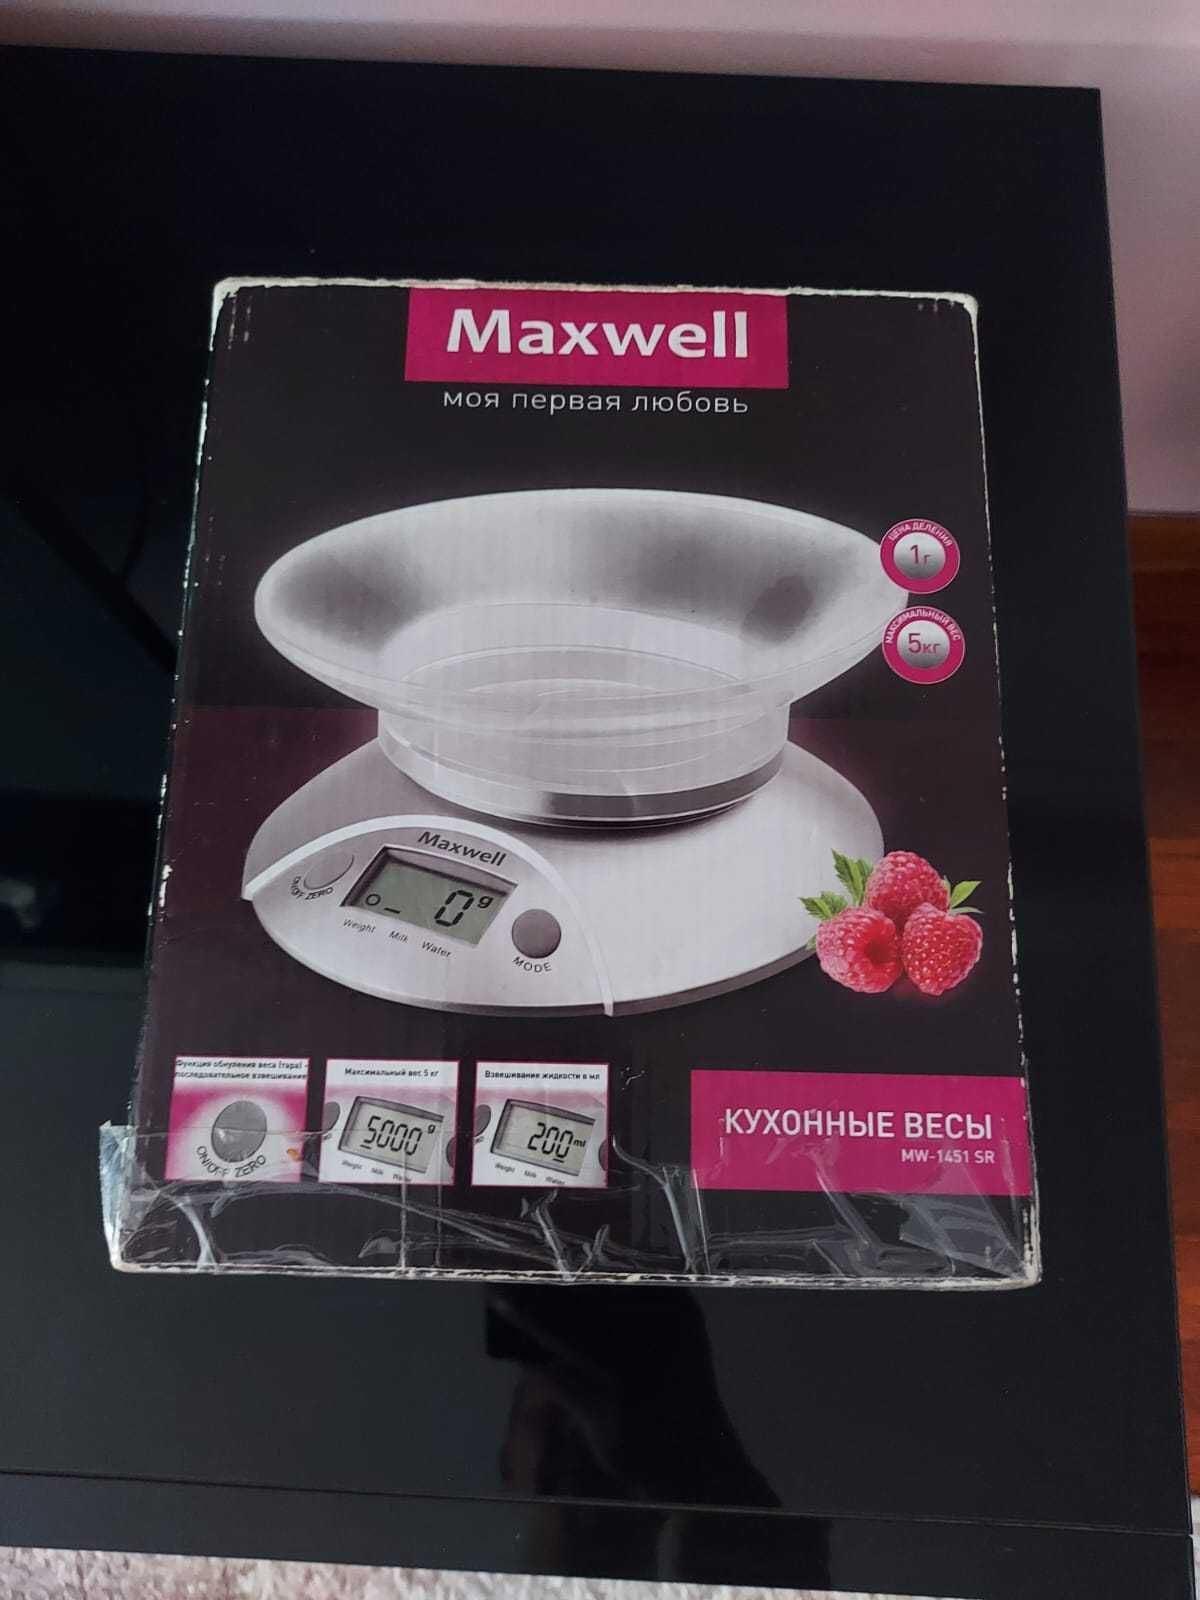 Весы кухонные, электронные Maxwell MW-1451